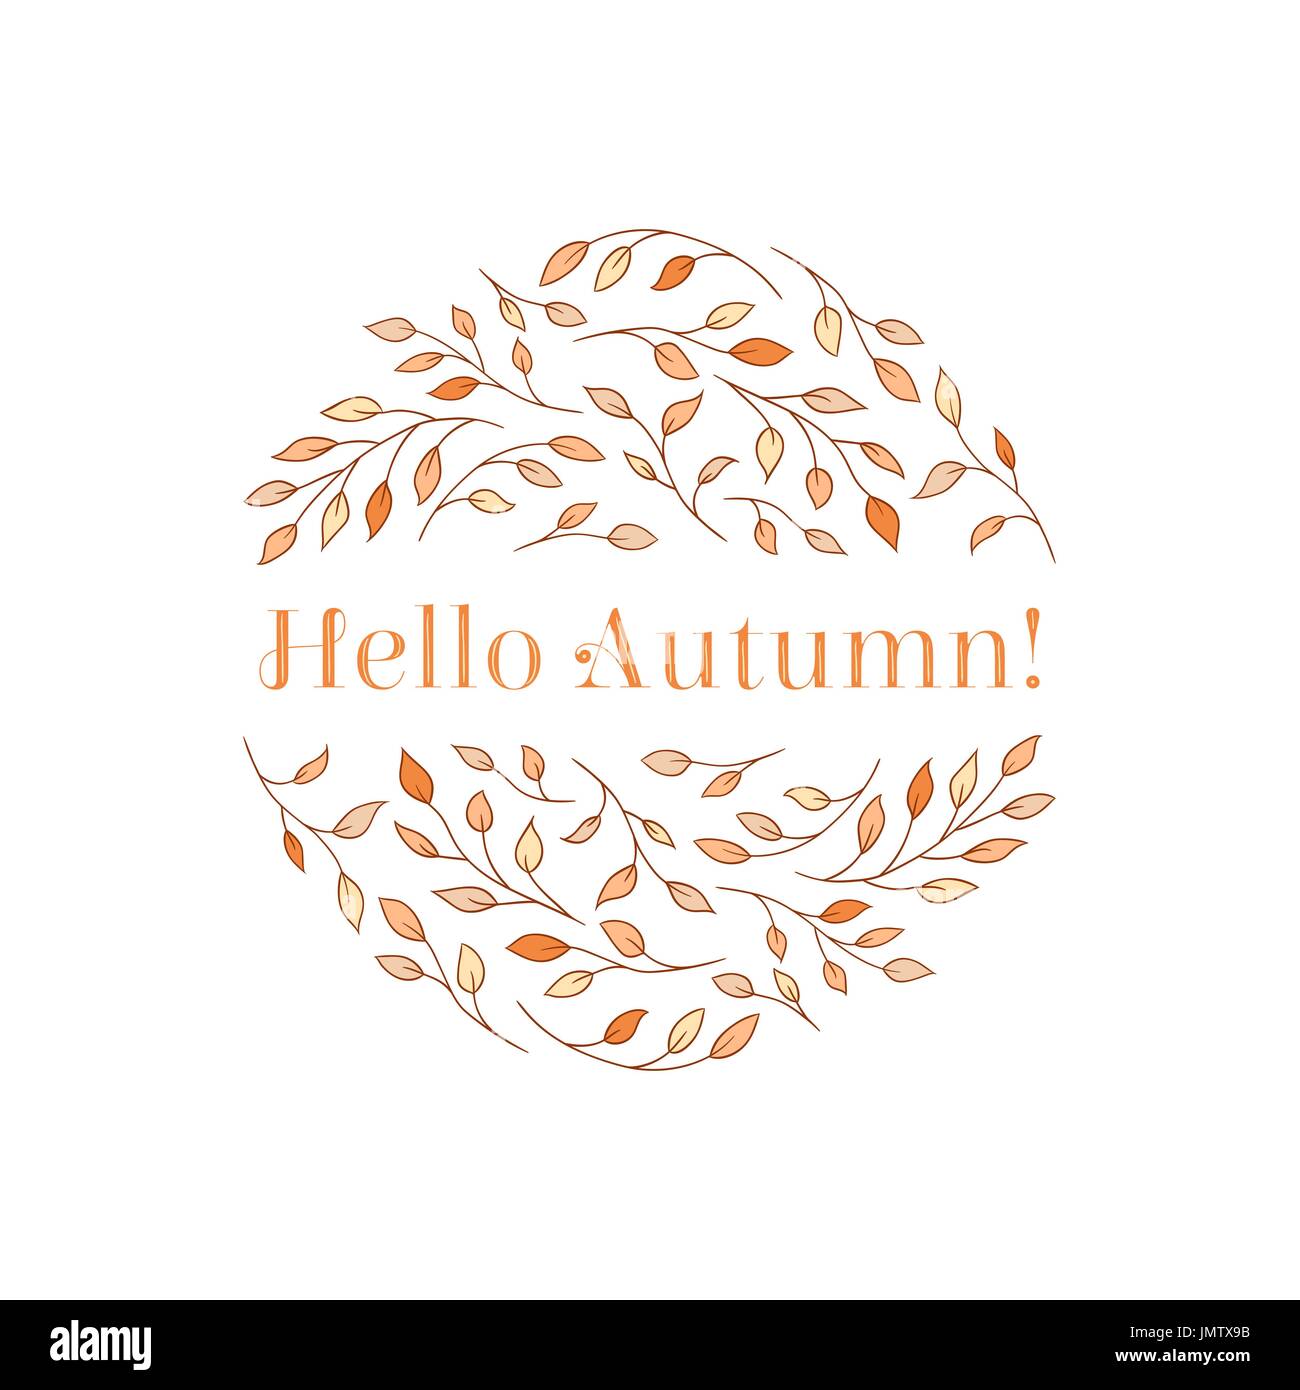 Elegante a rami di alberi disposti in un cerchio con un "Ciao autunno!' iscrizione. Stagionale autunno del concetto di delicato giallo e sfumature di colore arancione. Illustrazione Vettoriale